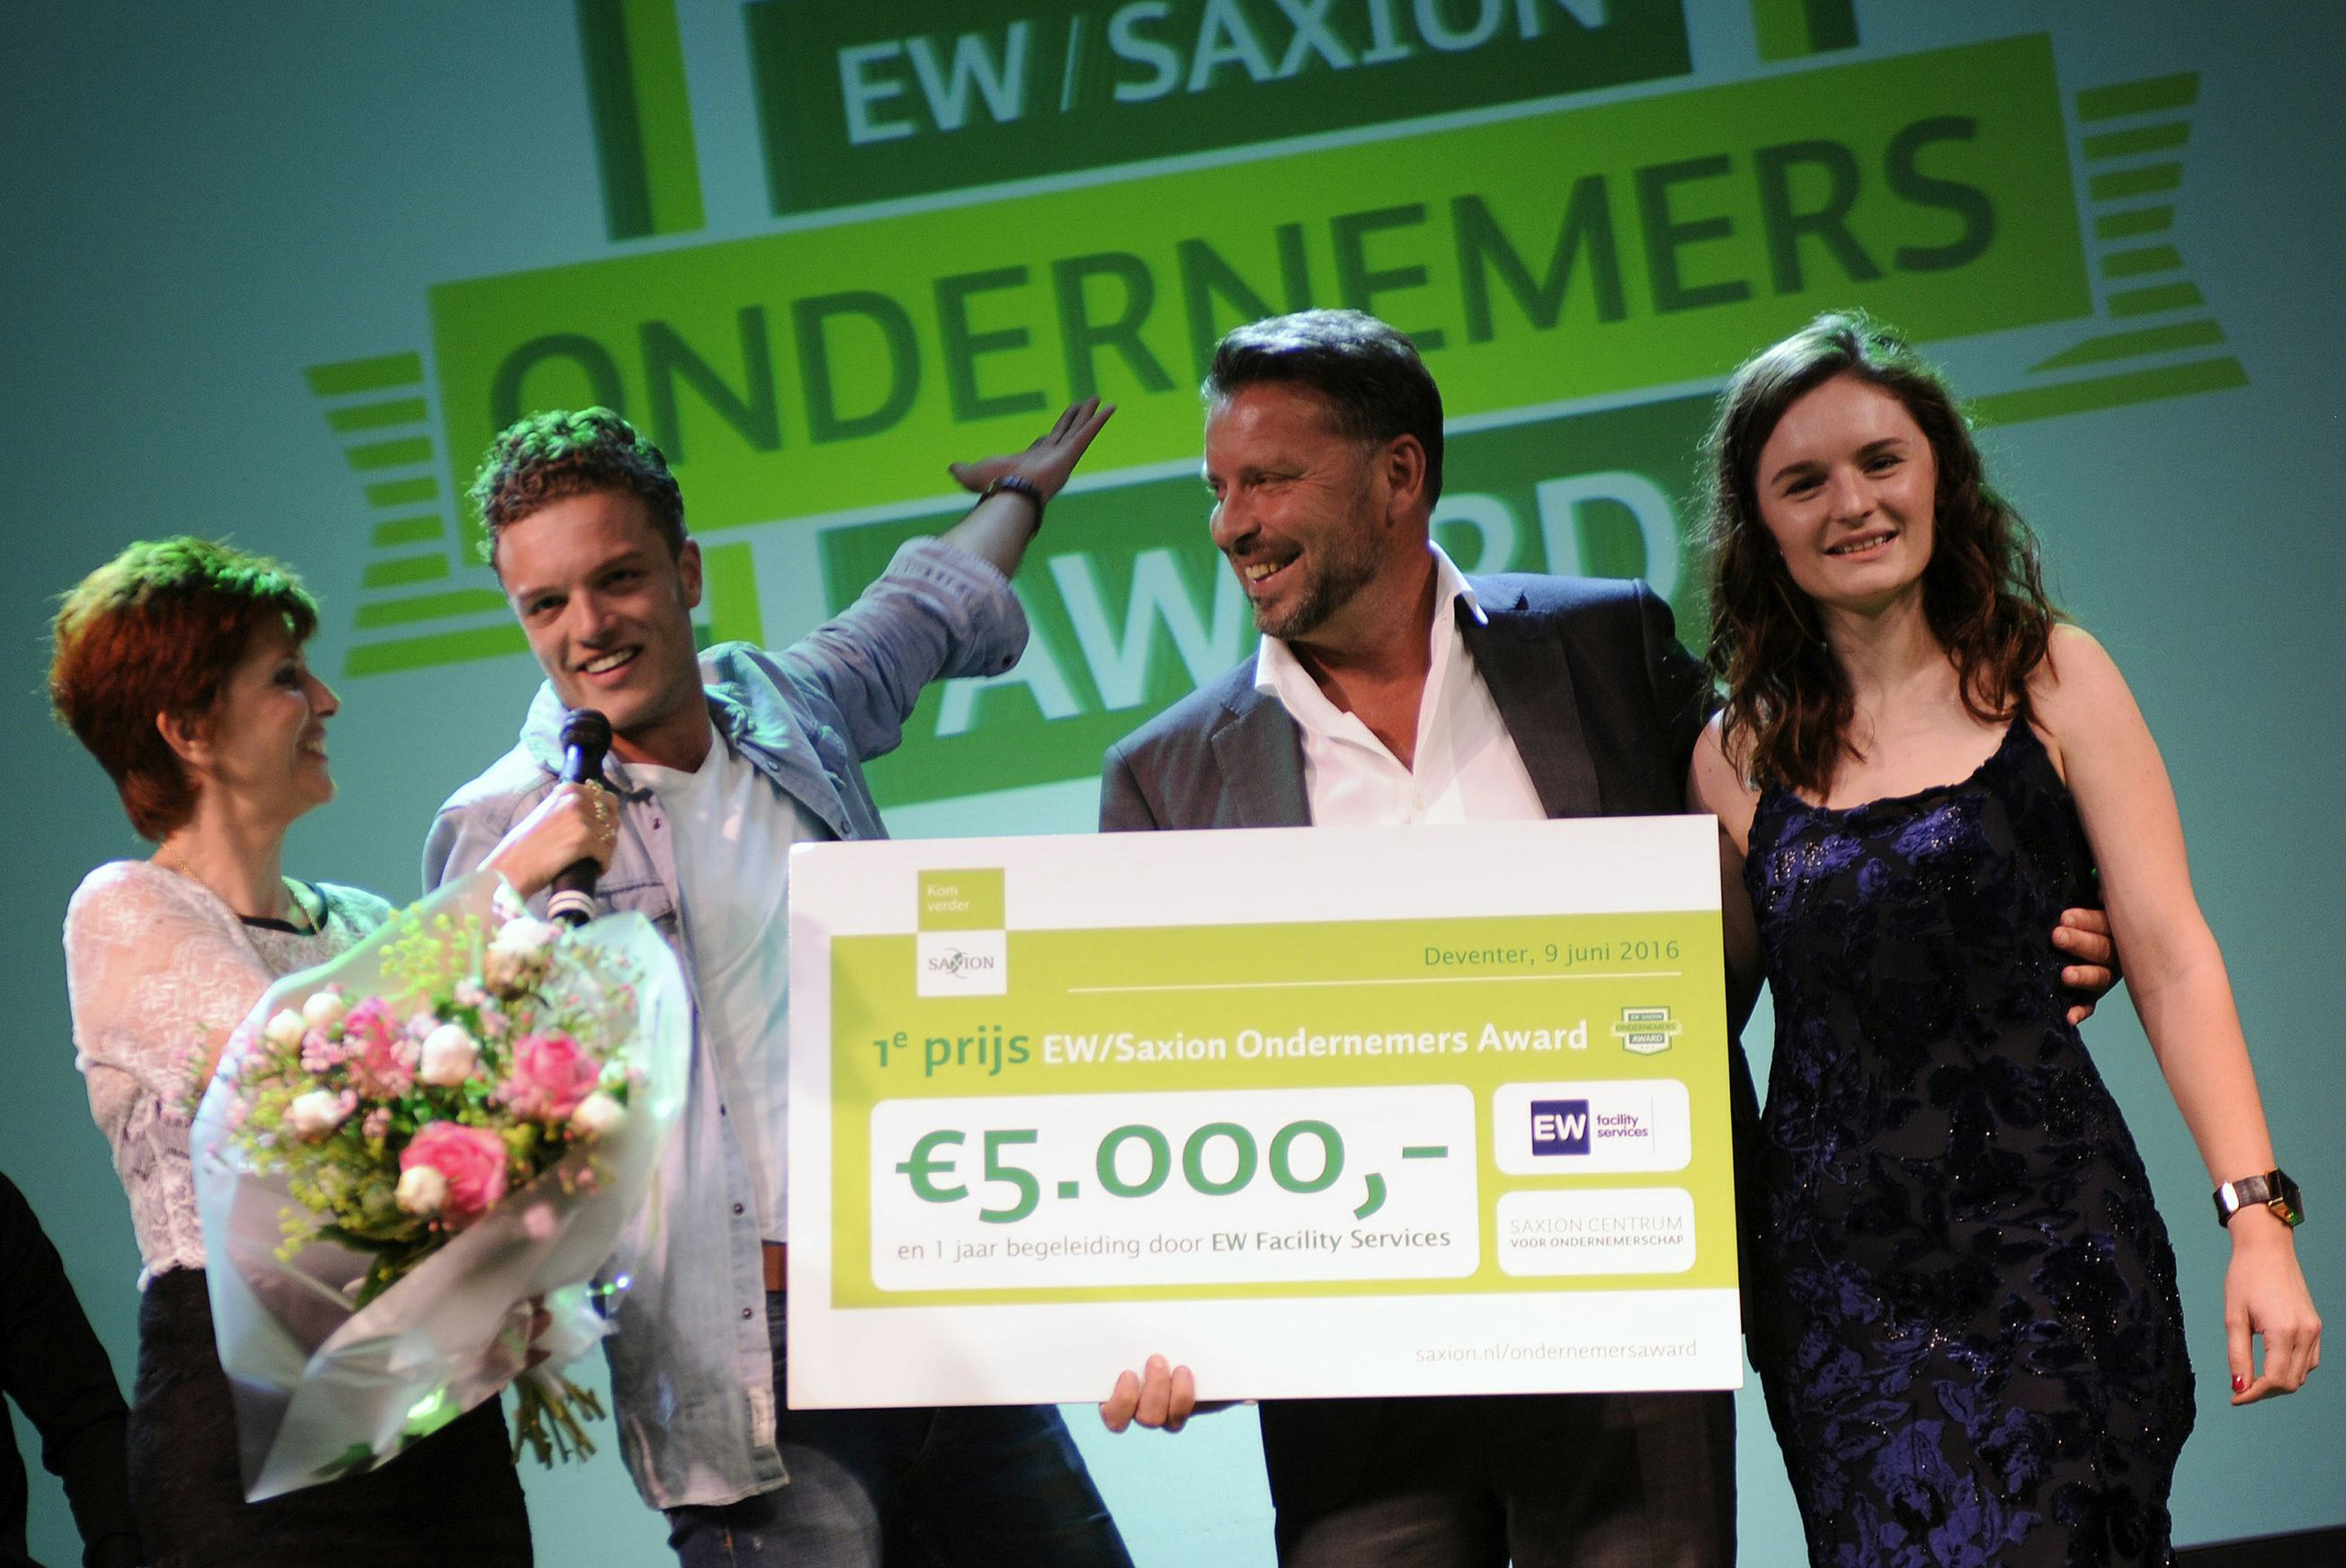 EW Facility Services en Saxion reiken voor 7e keer Ondernemers Award uit